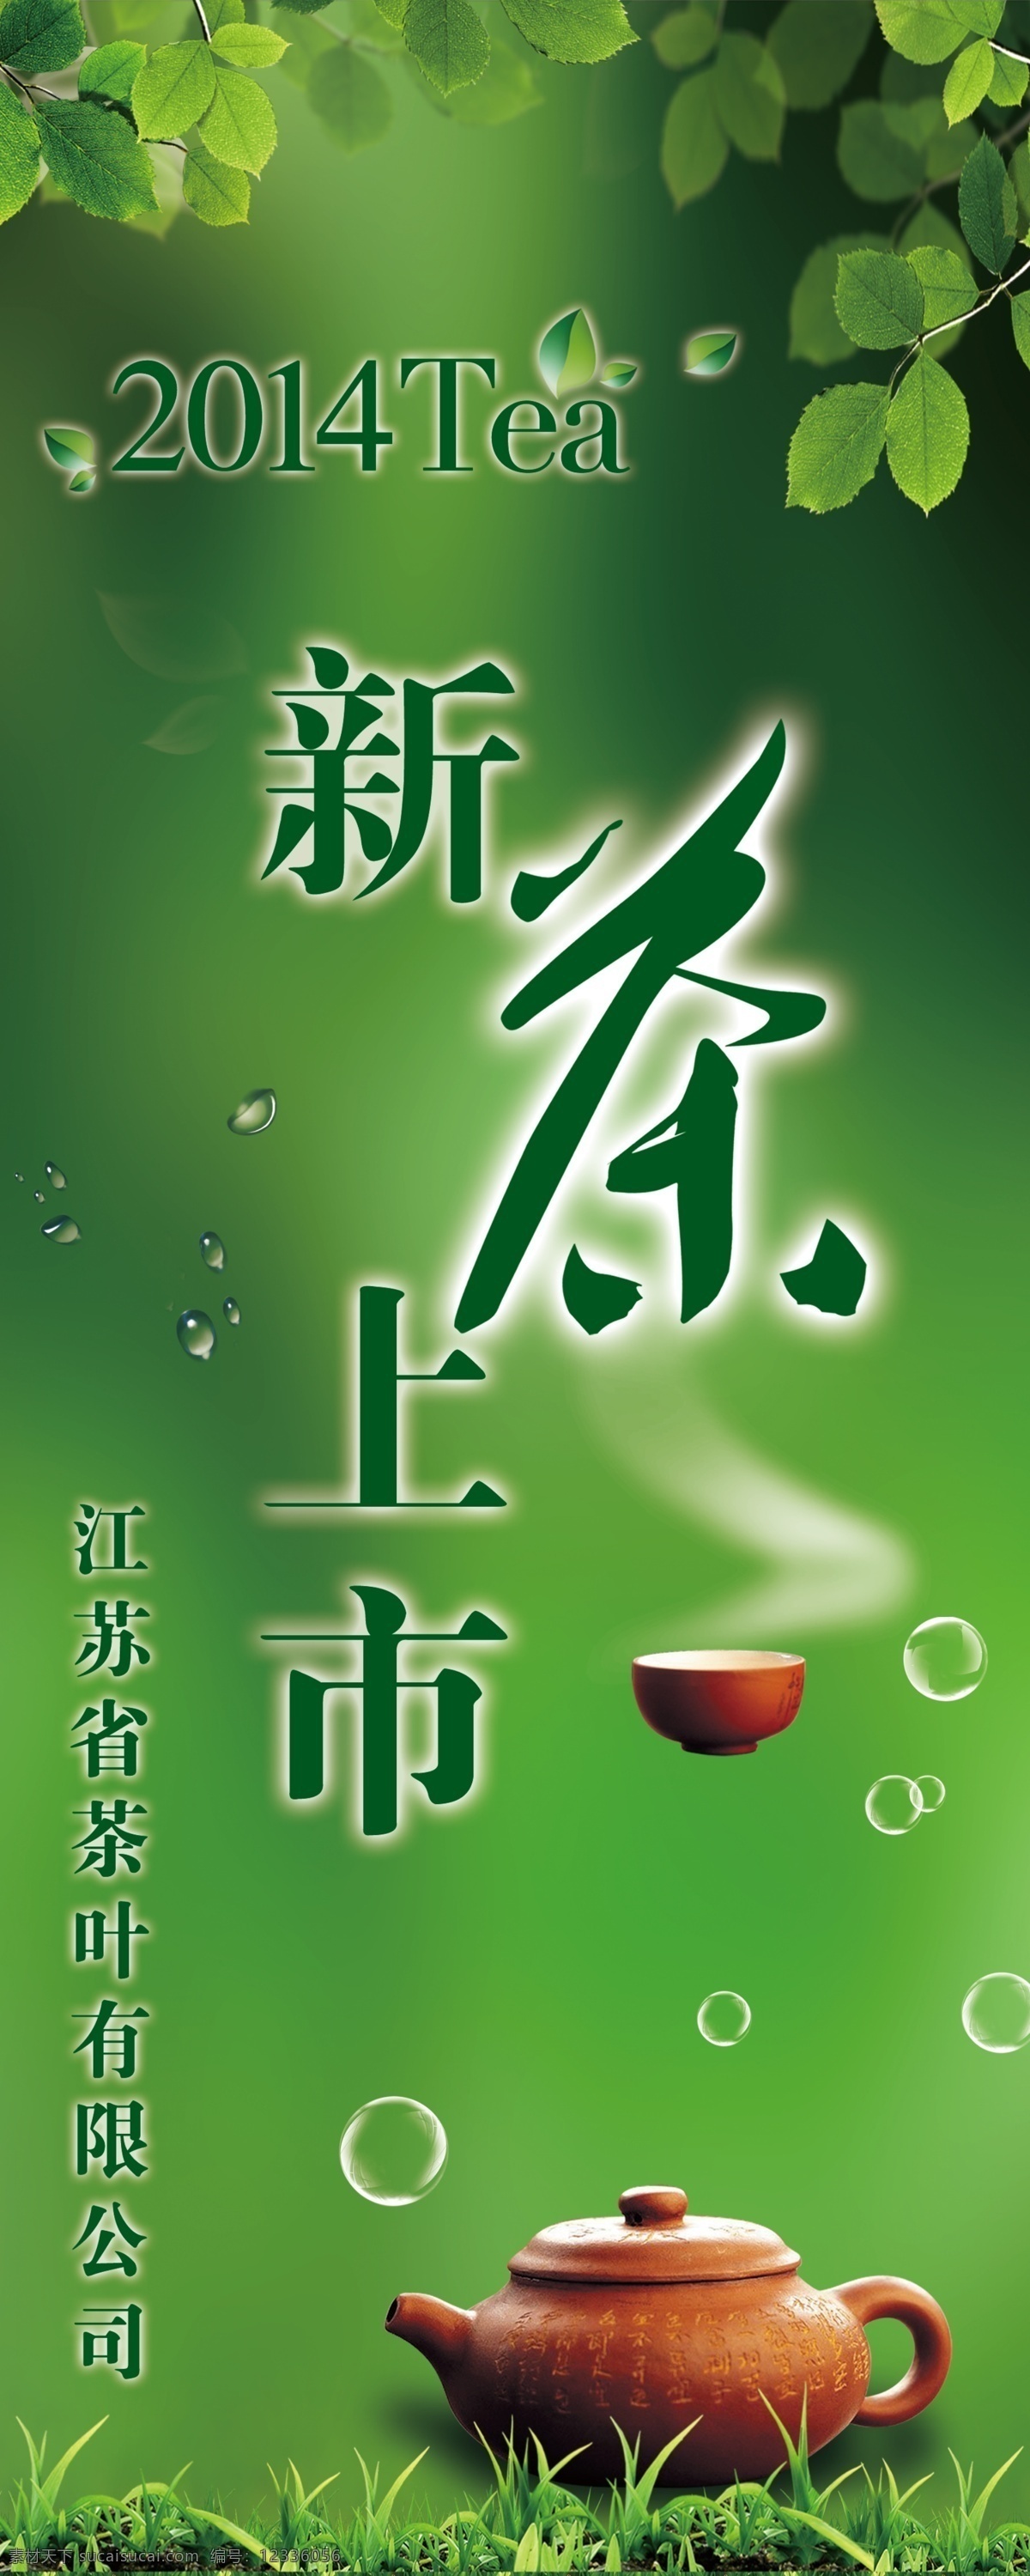 新茶上市 茶壶 茶杯 热气 树叶 小草 水滴 气泡 绿色 广告海报 广告设计模板 源文件